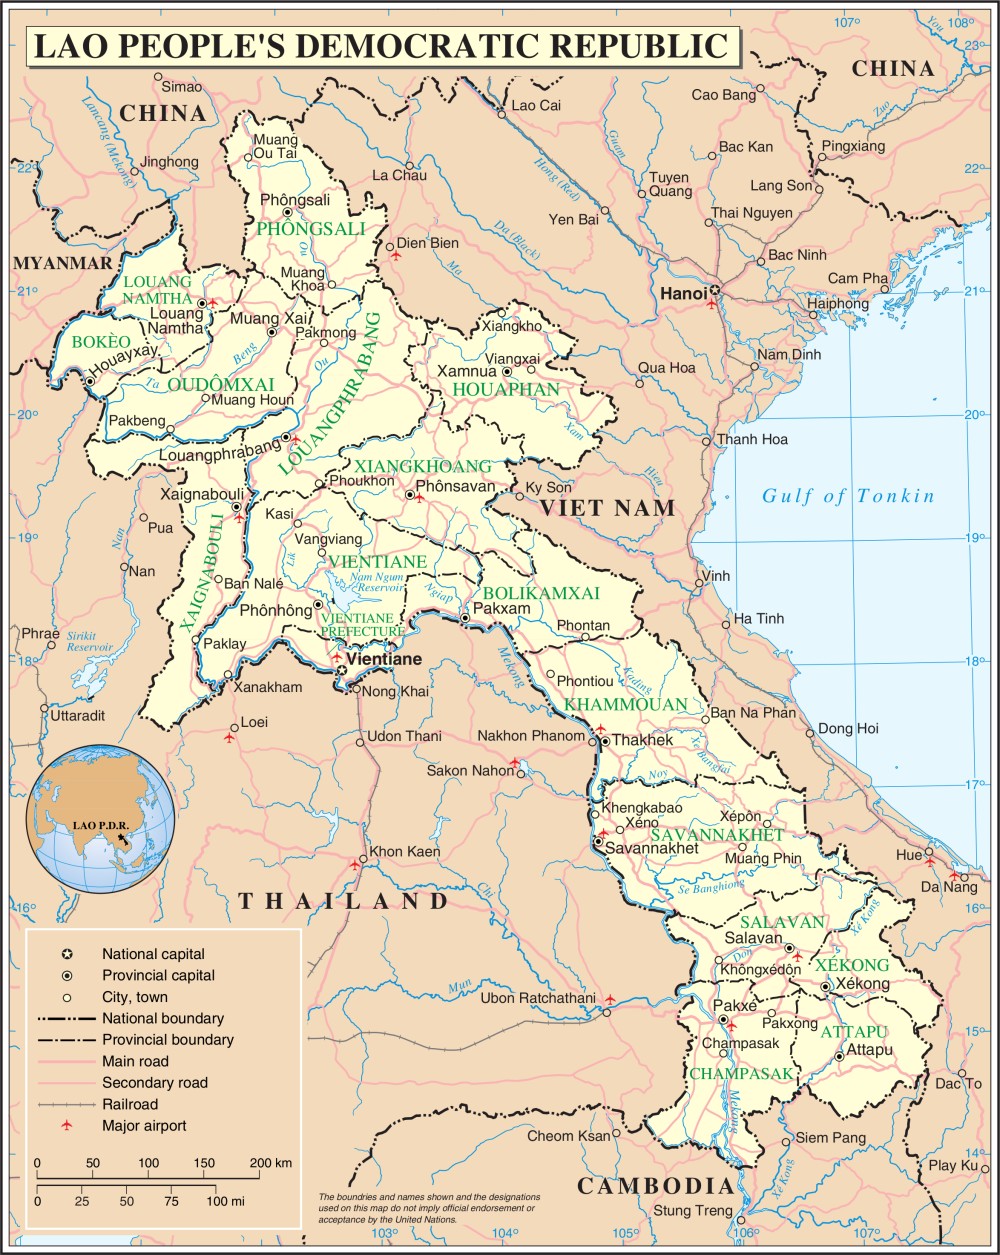 Bản đồ đất nước Lào năm 2024 sẽ đem đến cho bạn cái nhìn chân thực về quốc gia này. Với những thay đổi về mặt kinh tế và văn hóa, Lào đang trở thành điểm đến hấp dẫn cho du khách khắp nơi trên thế giới.